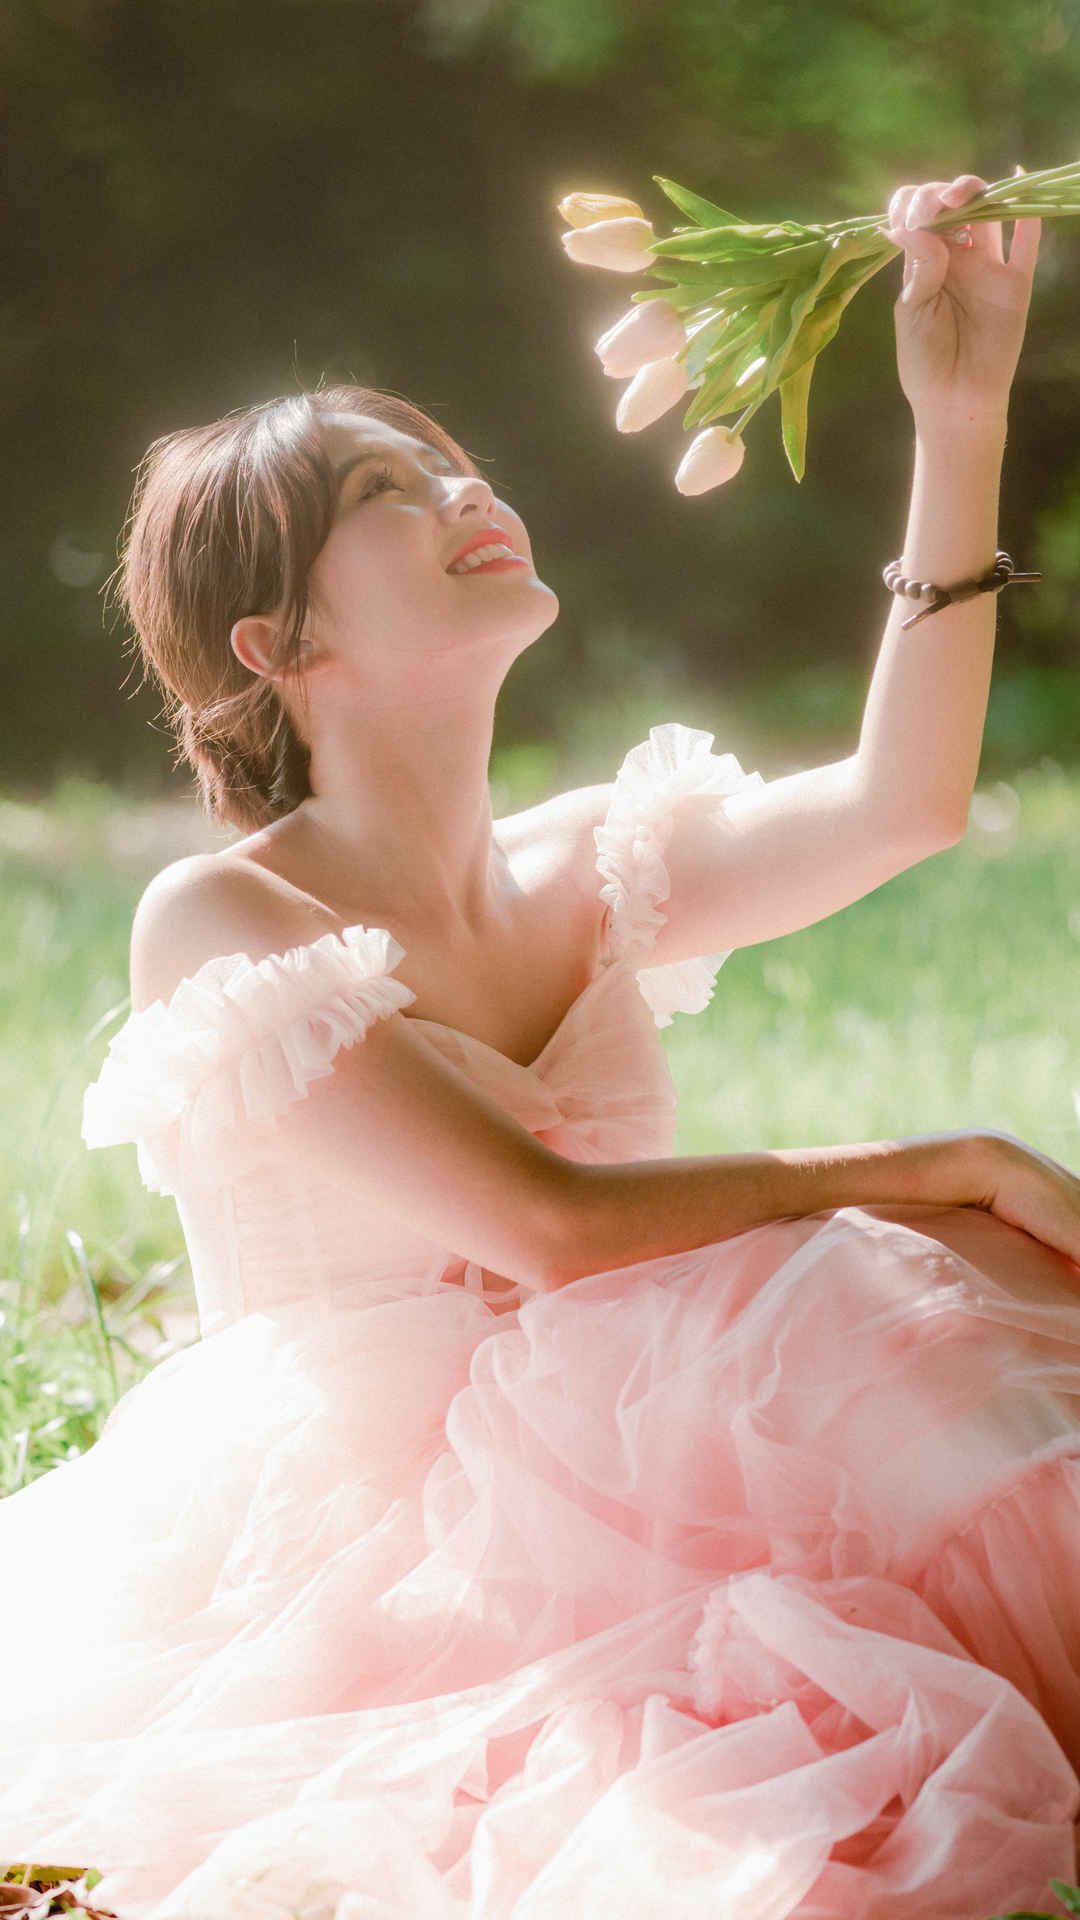 女神节快乐 森林 坐在草地上的美女 粉色裙子